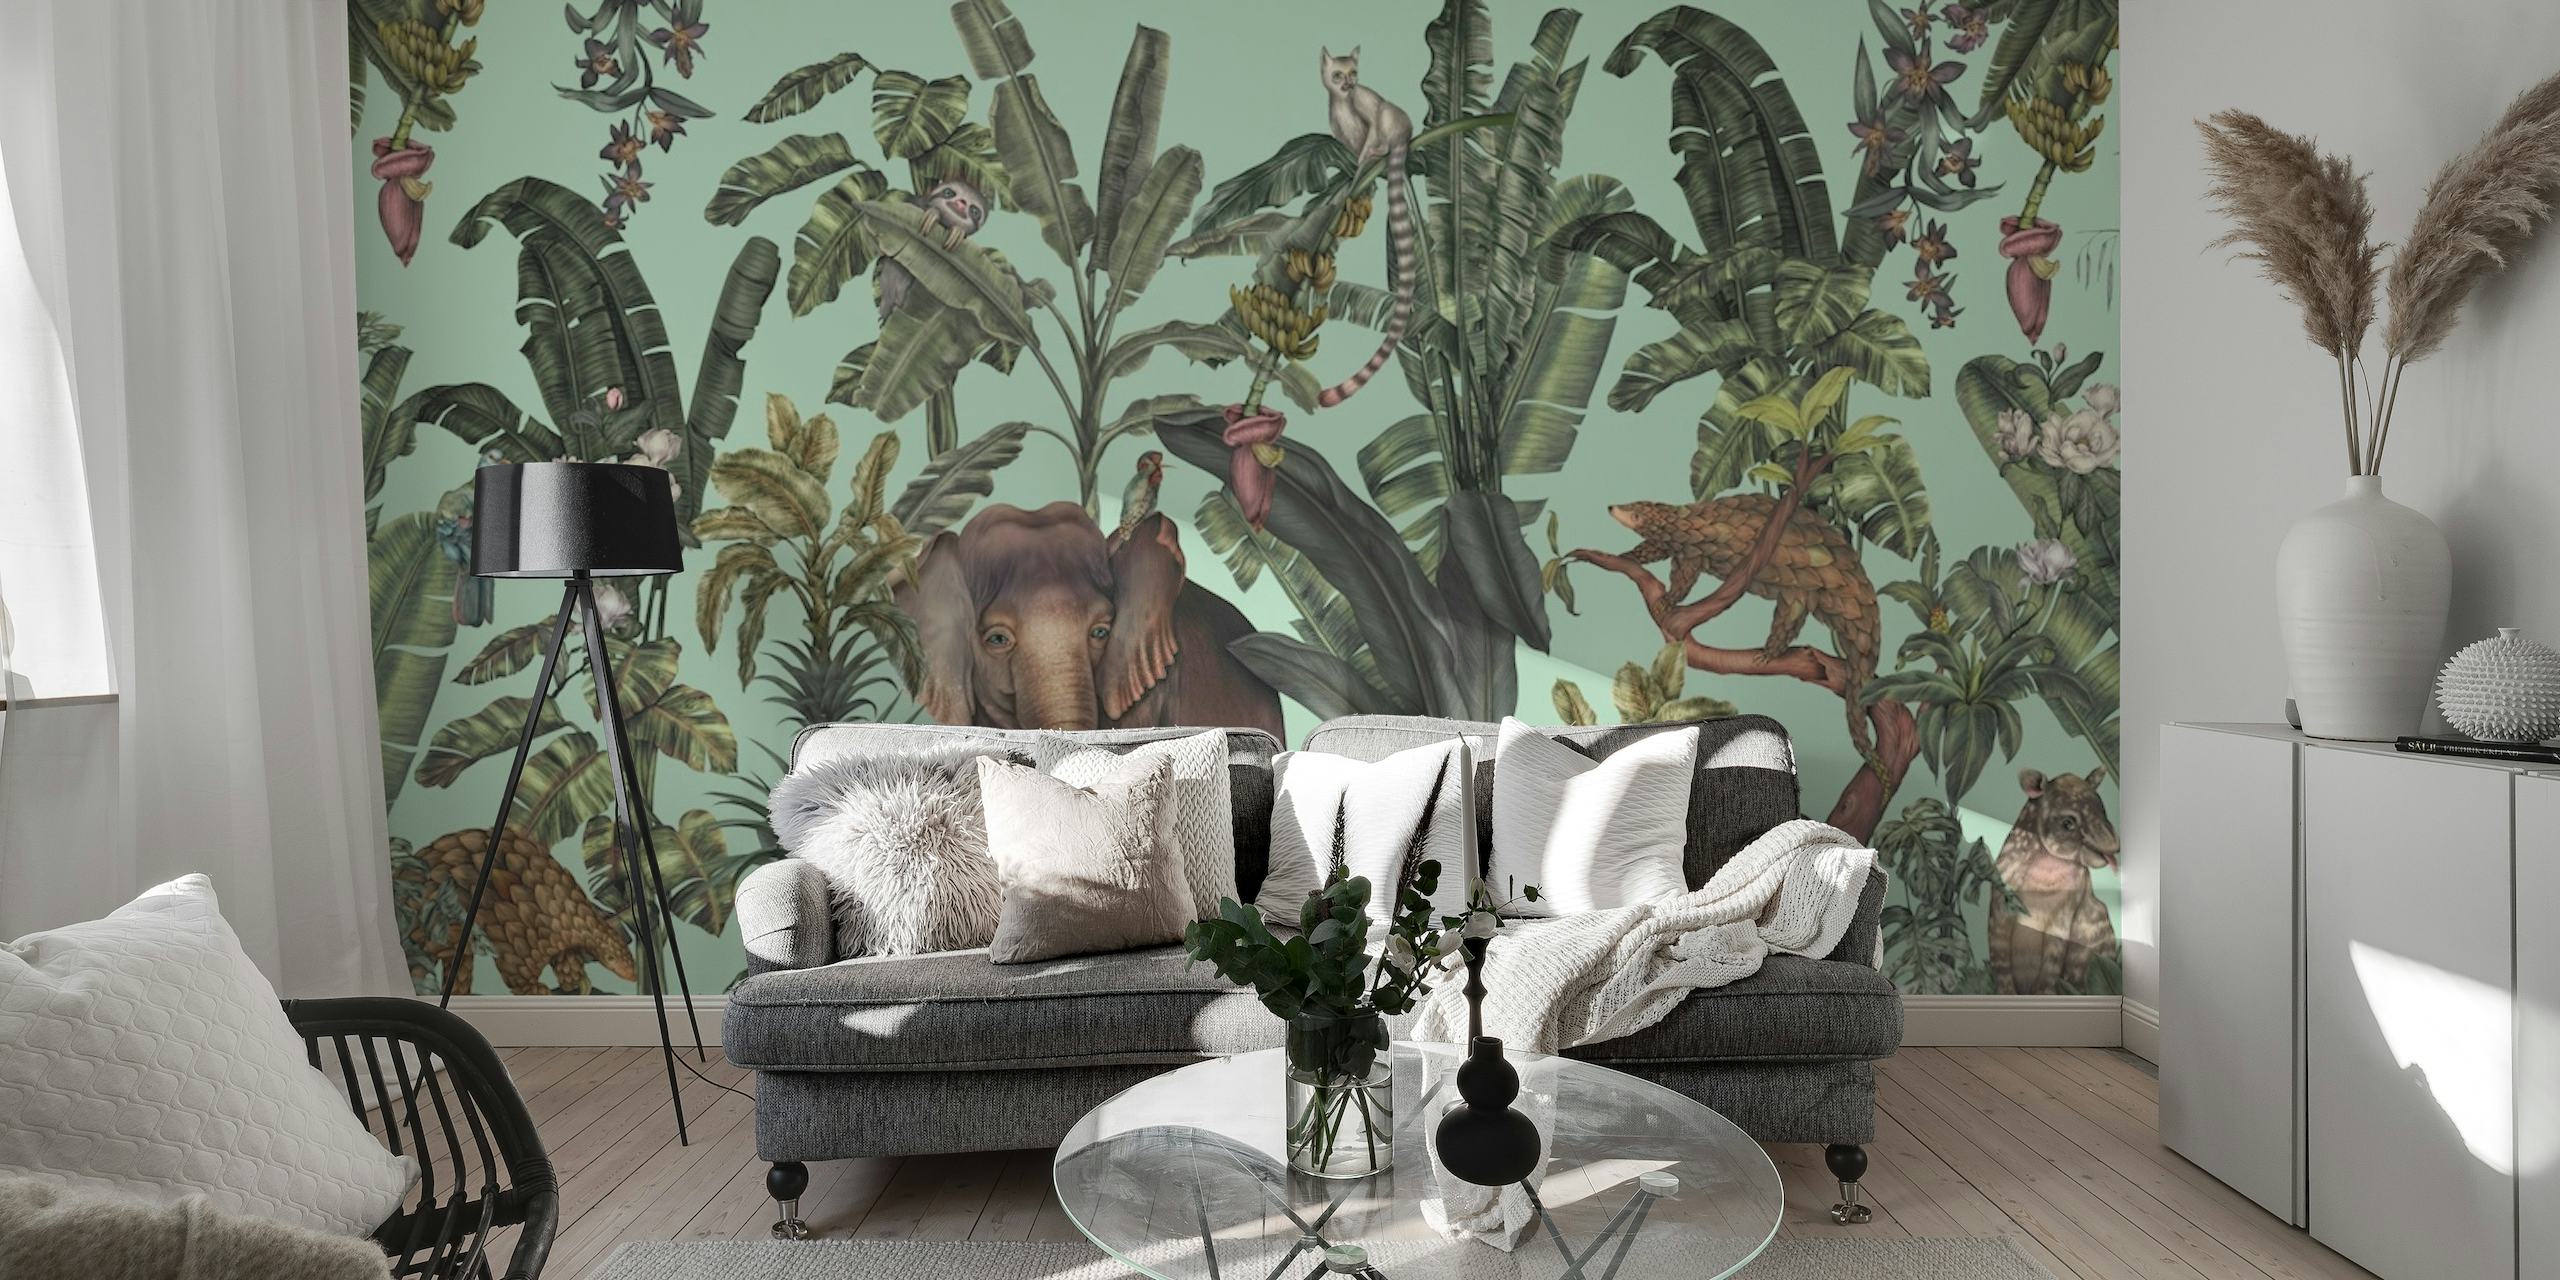 Vaaleanvihreä viidakkoaiheinen seinämaalaus, jossa on trooppista kasvistoa ja piilotettuja villieläimiä